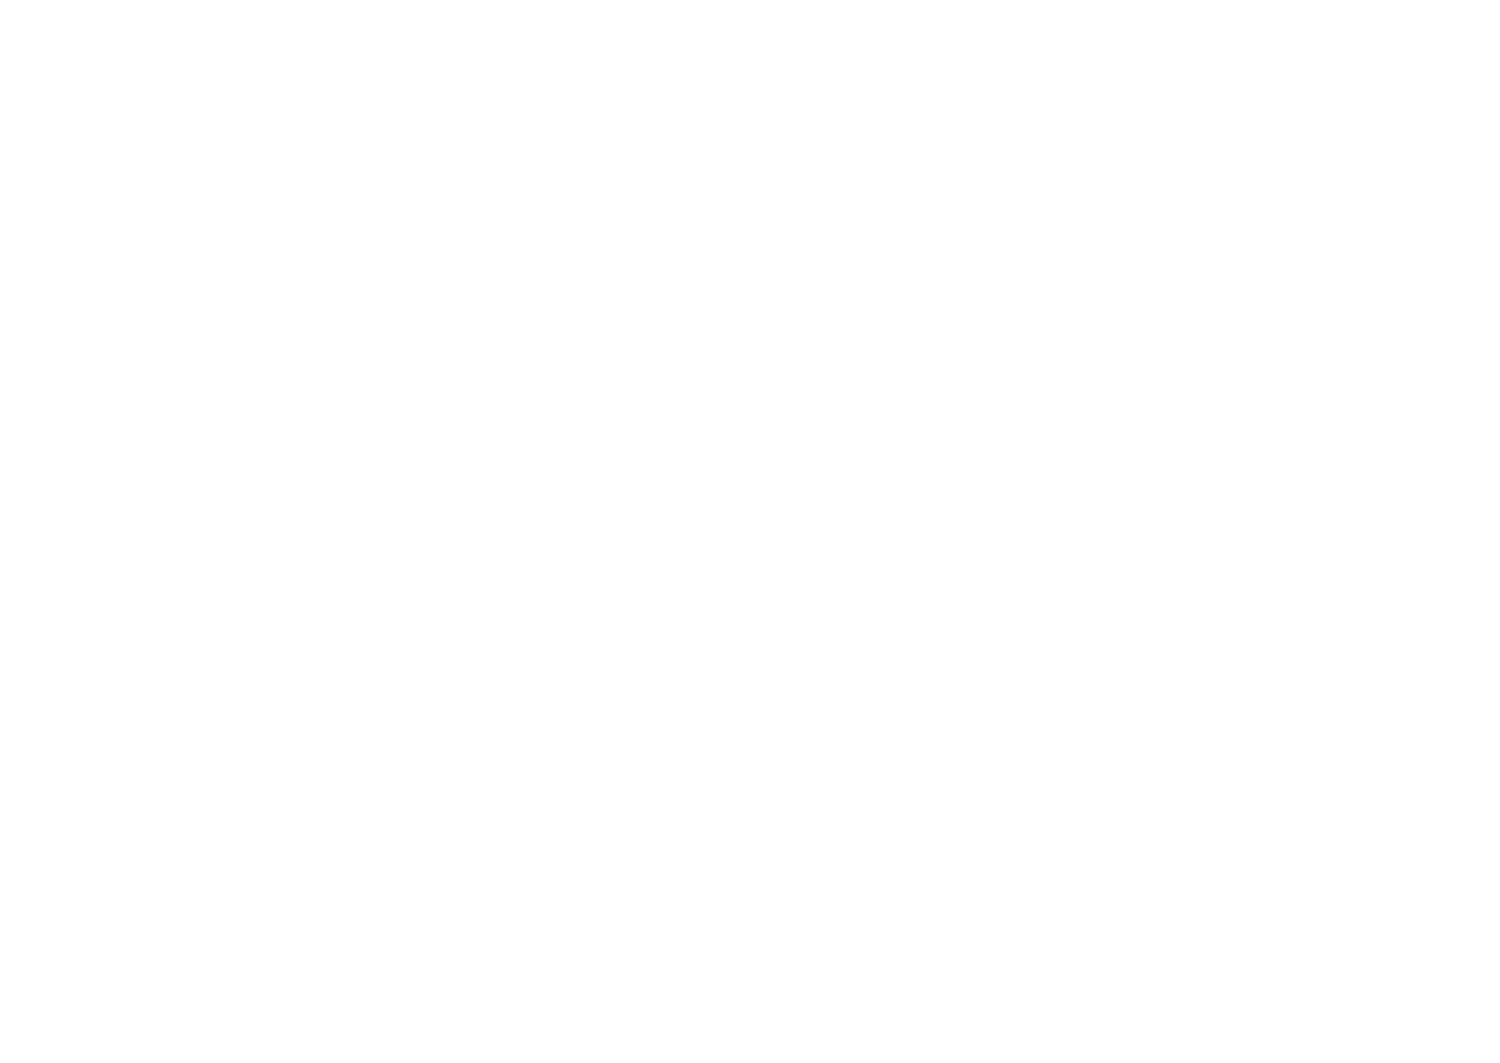 No Ends Media